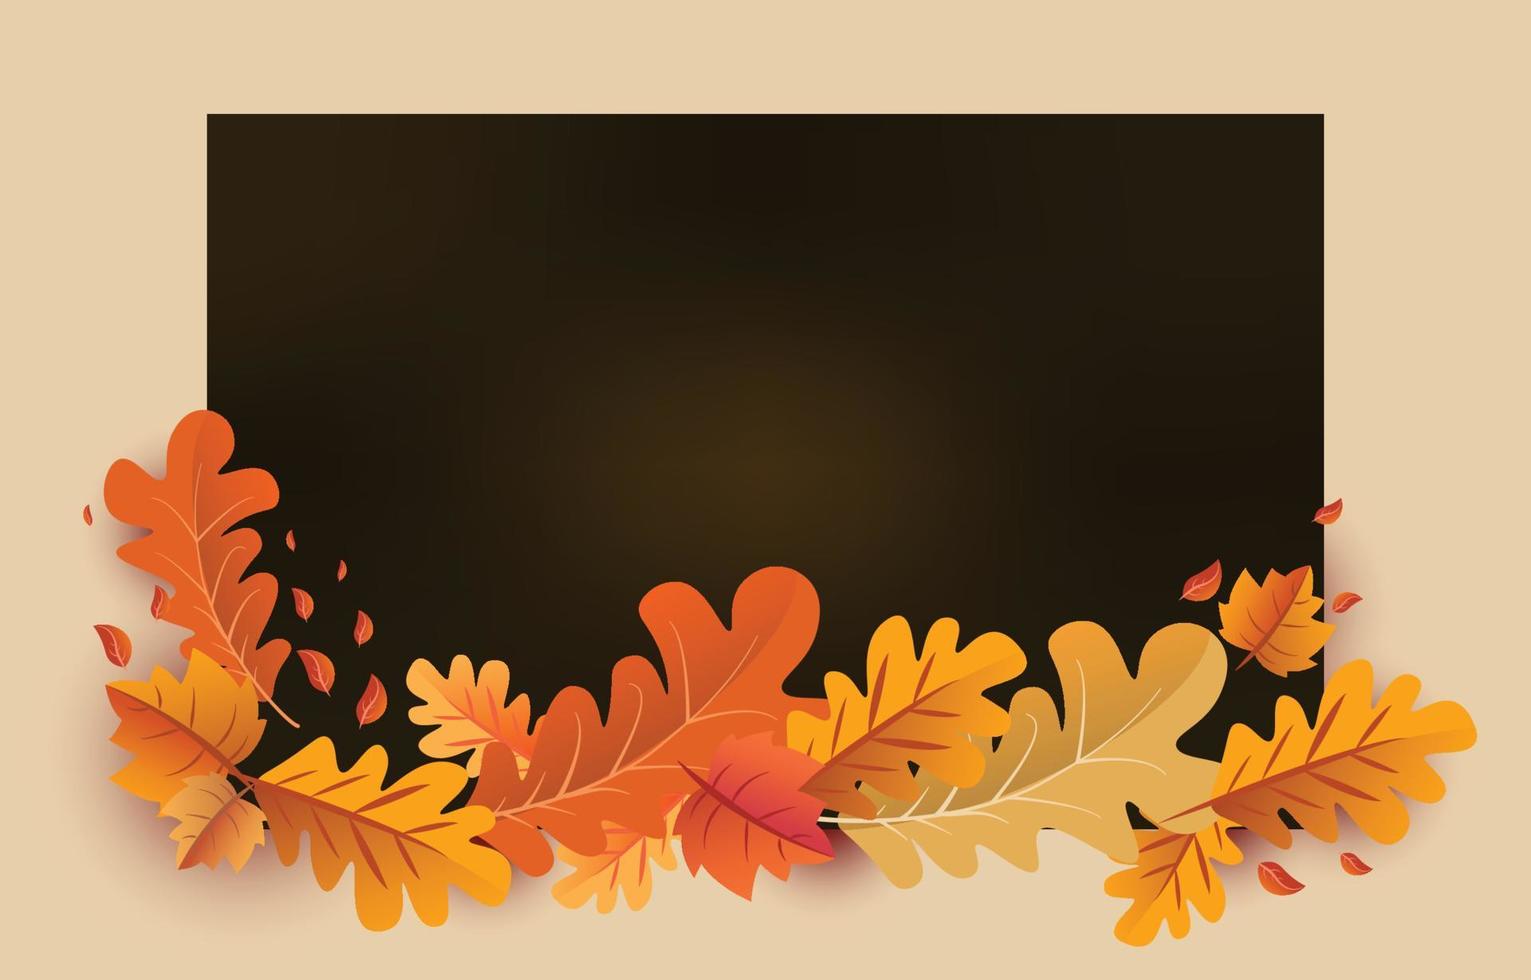 Herbsthintergrund mit Blättern goldgelb. herbstkonzept, für tapeten, postkarten, grußkarten, website-seiten, banner, online-verkauf. Vektor-Illustration vektor